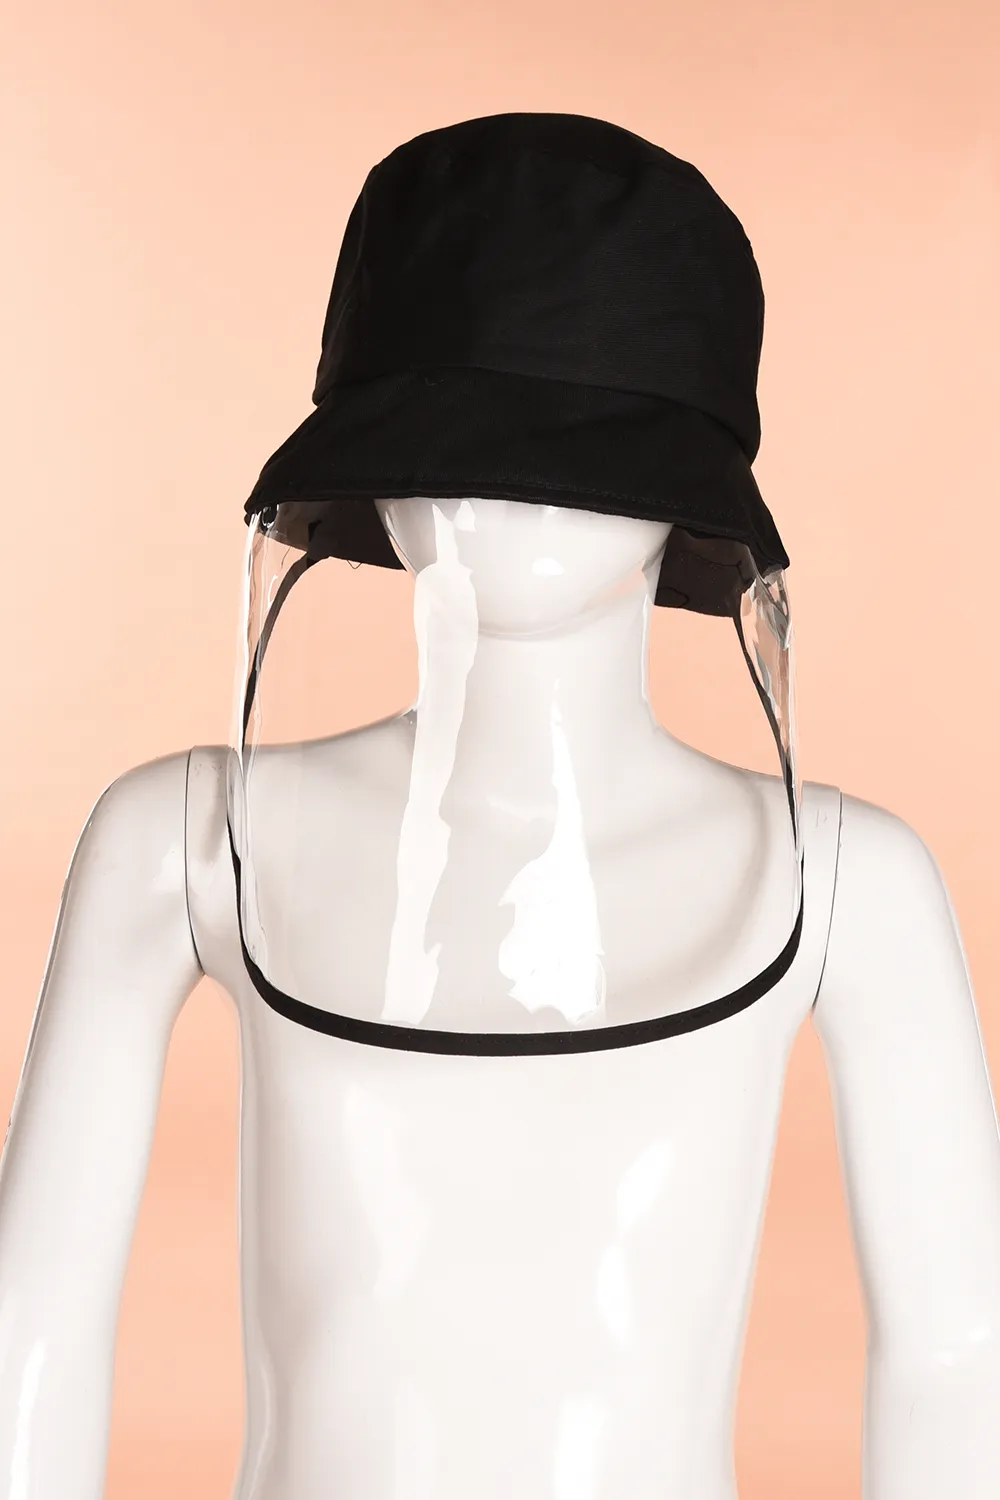 NUOVA maschera protettiva antipolvere di sicurezza Copertina nera con cappello antisputo antipolvere maschera protettiva per gli occhi a pieno facciale